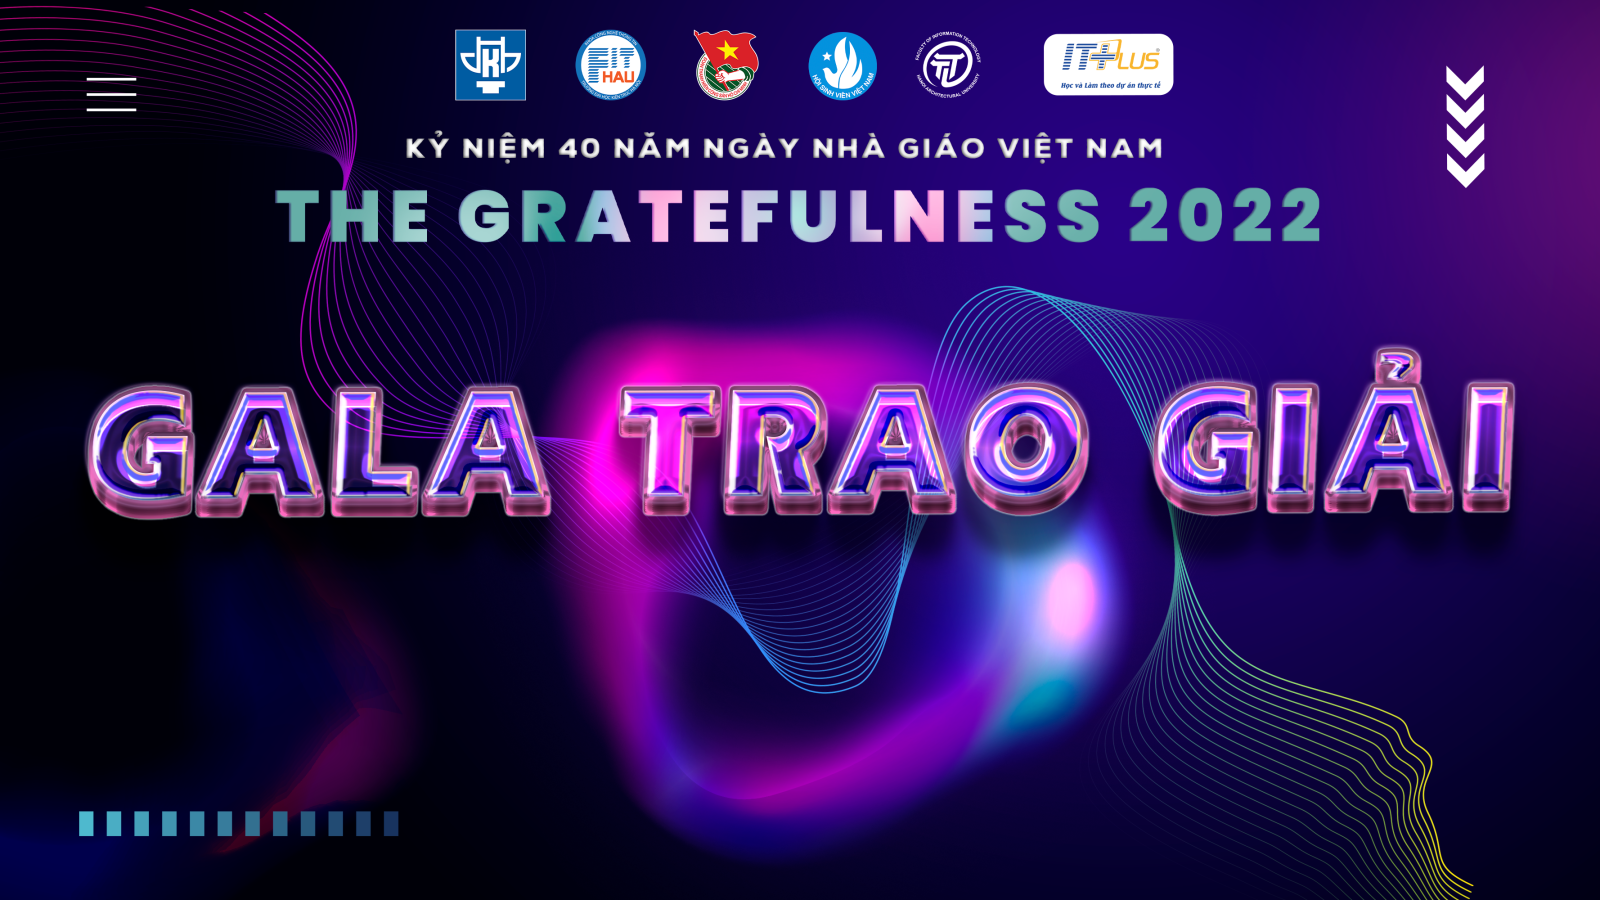 GALA TRAO GIẢI - CHUỖI SỰ KIỆN THE GRATEFULNESS 2022